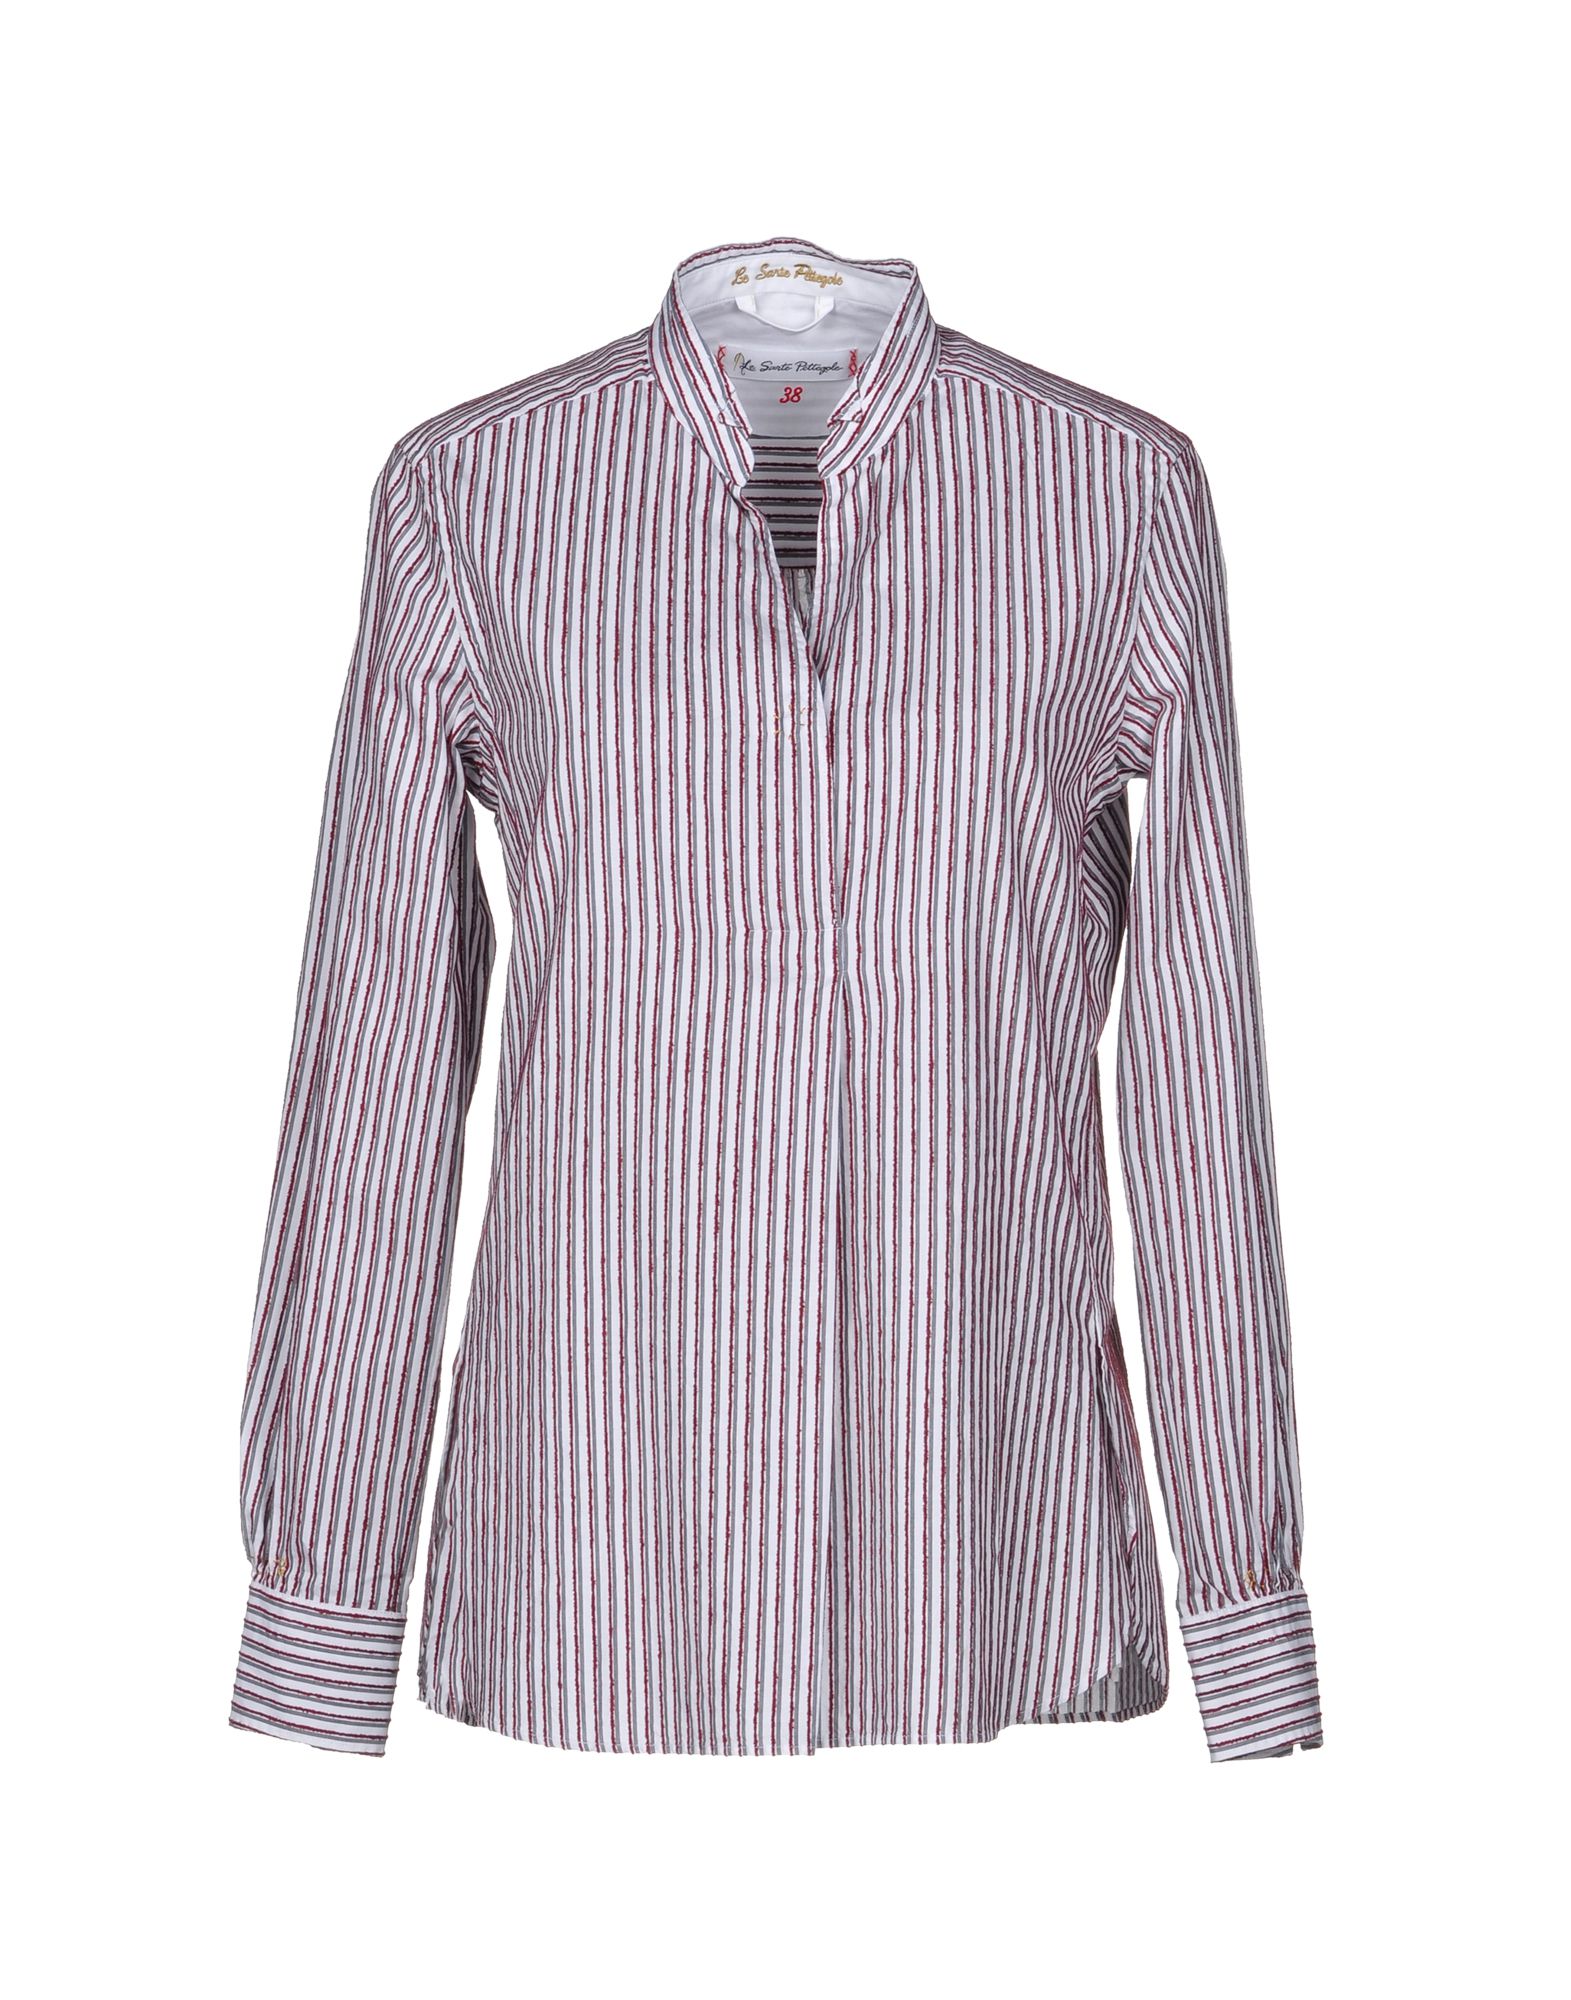 LE SARTE PETTEGOLE Striped shirt,38743579BH 2